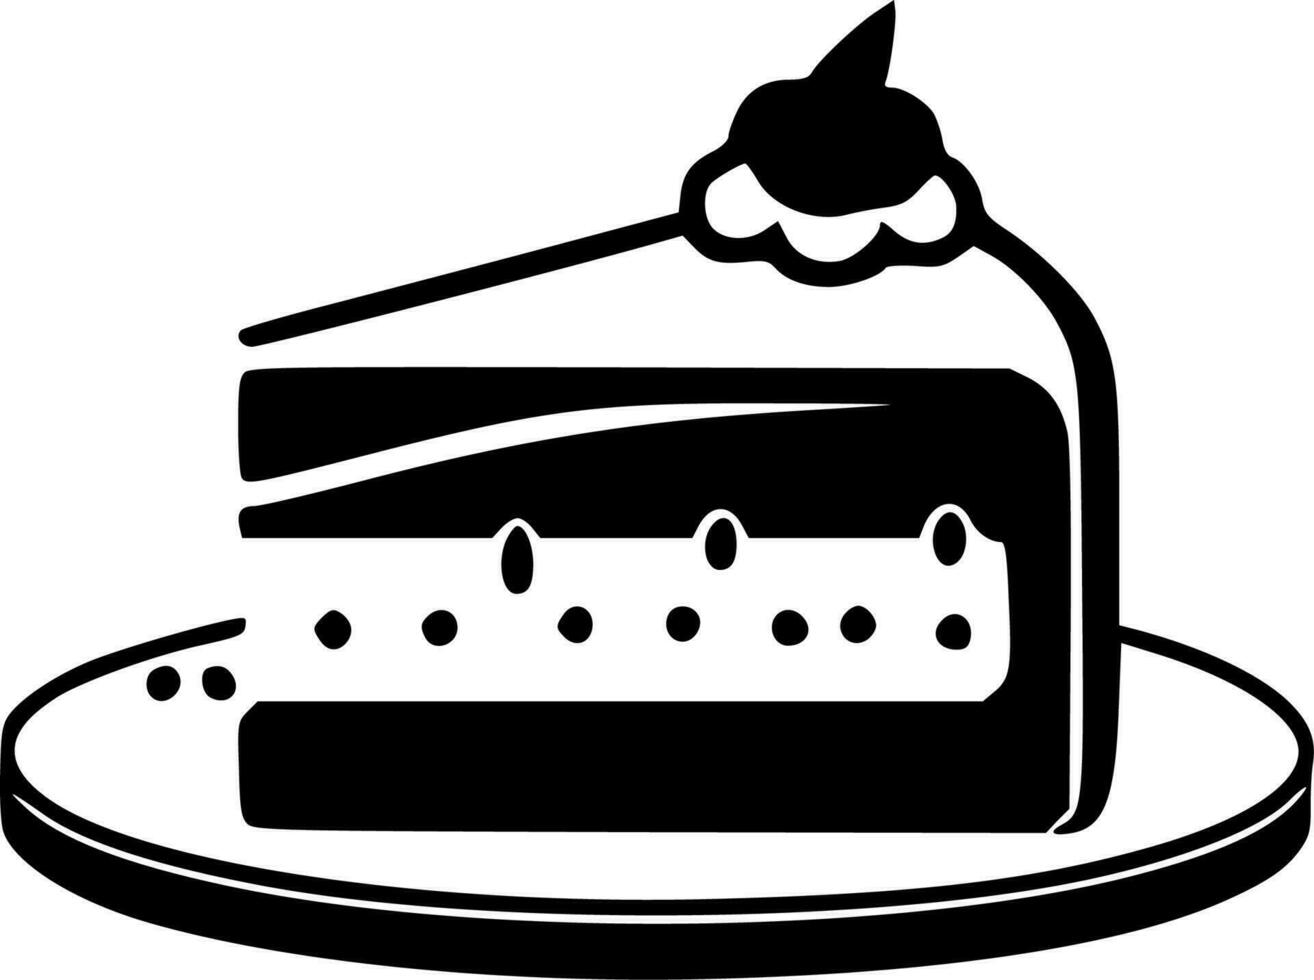 torta - minimalista e piatto logo - vettore illustrazione